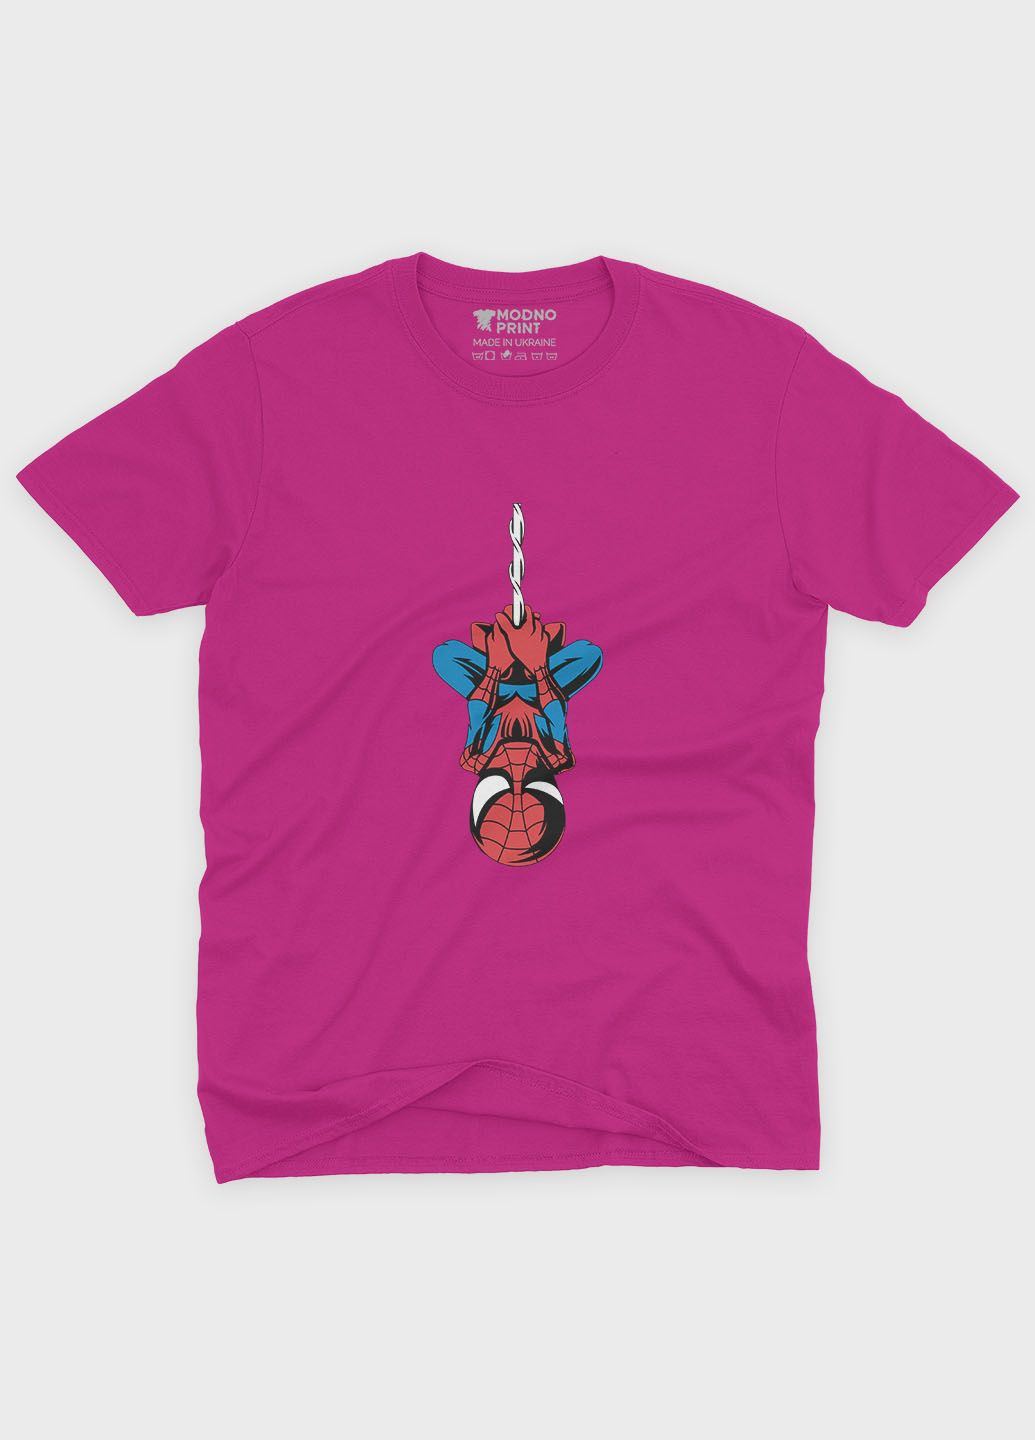 Розовая демисезонная футболка для мальчика с принтом супергероя - человек-паук (ts001-1-fuxj-006-014-085-b) Modno